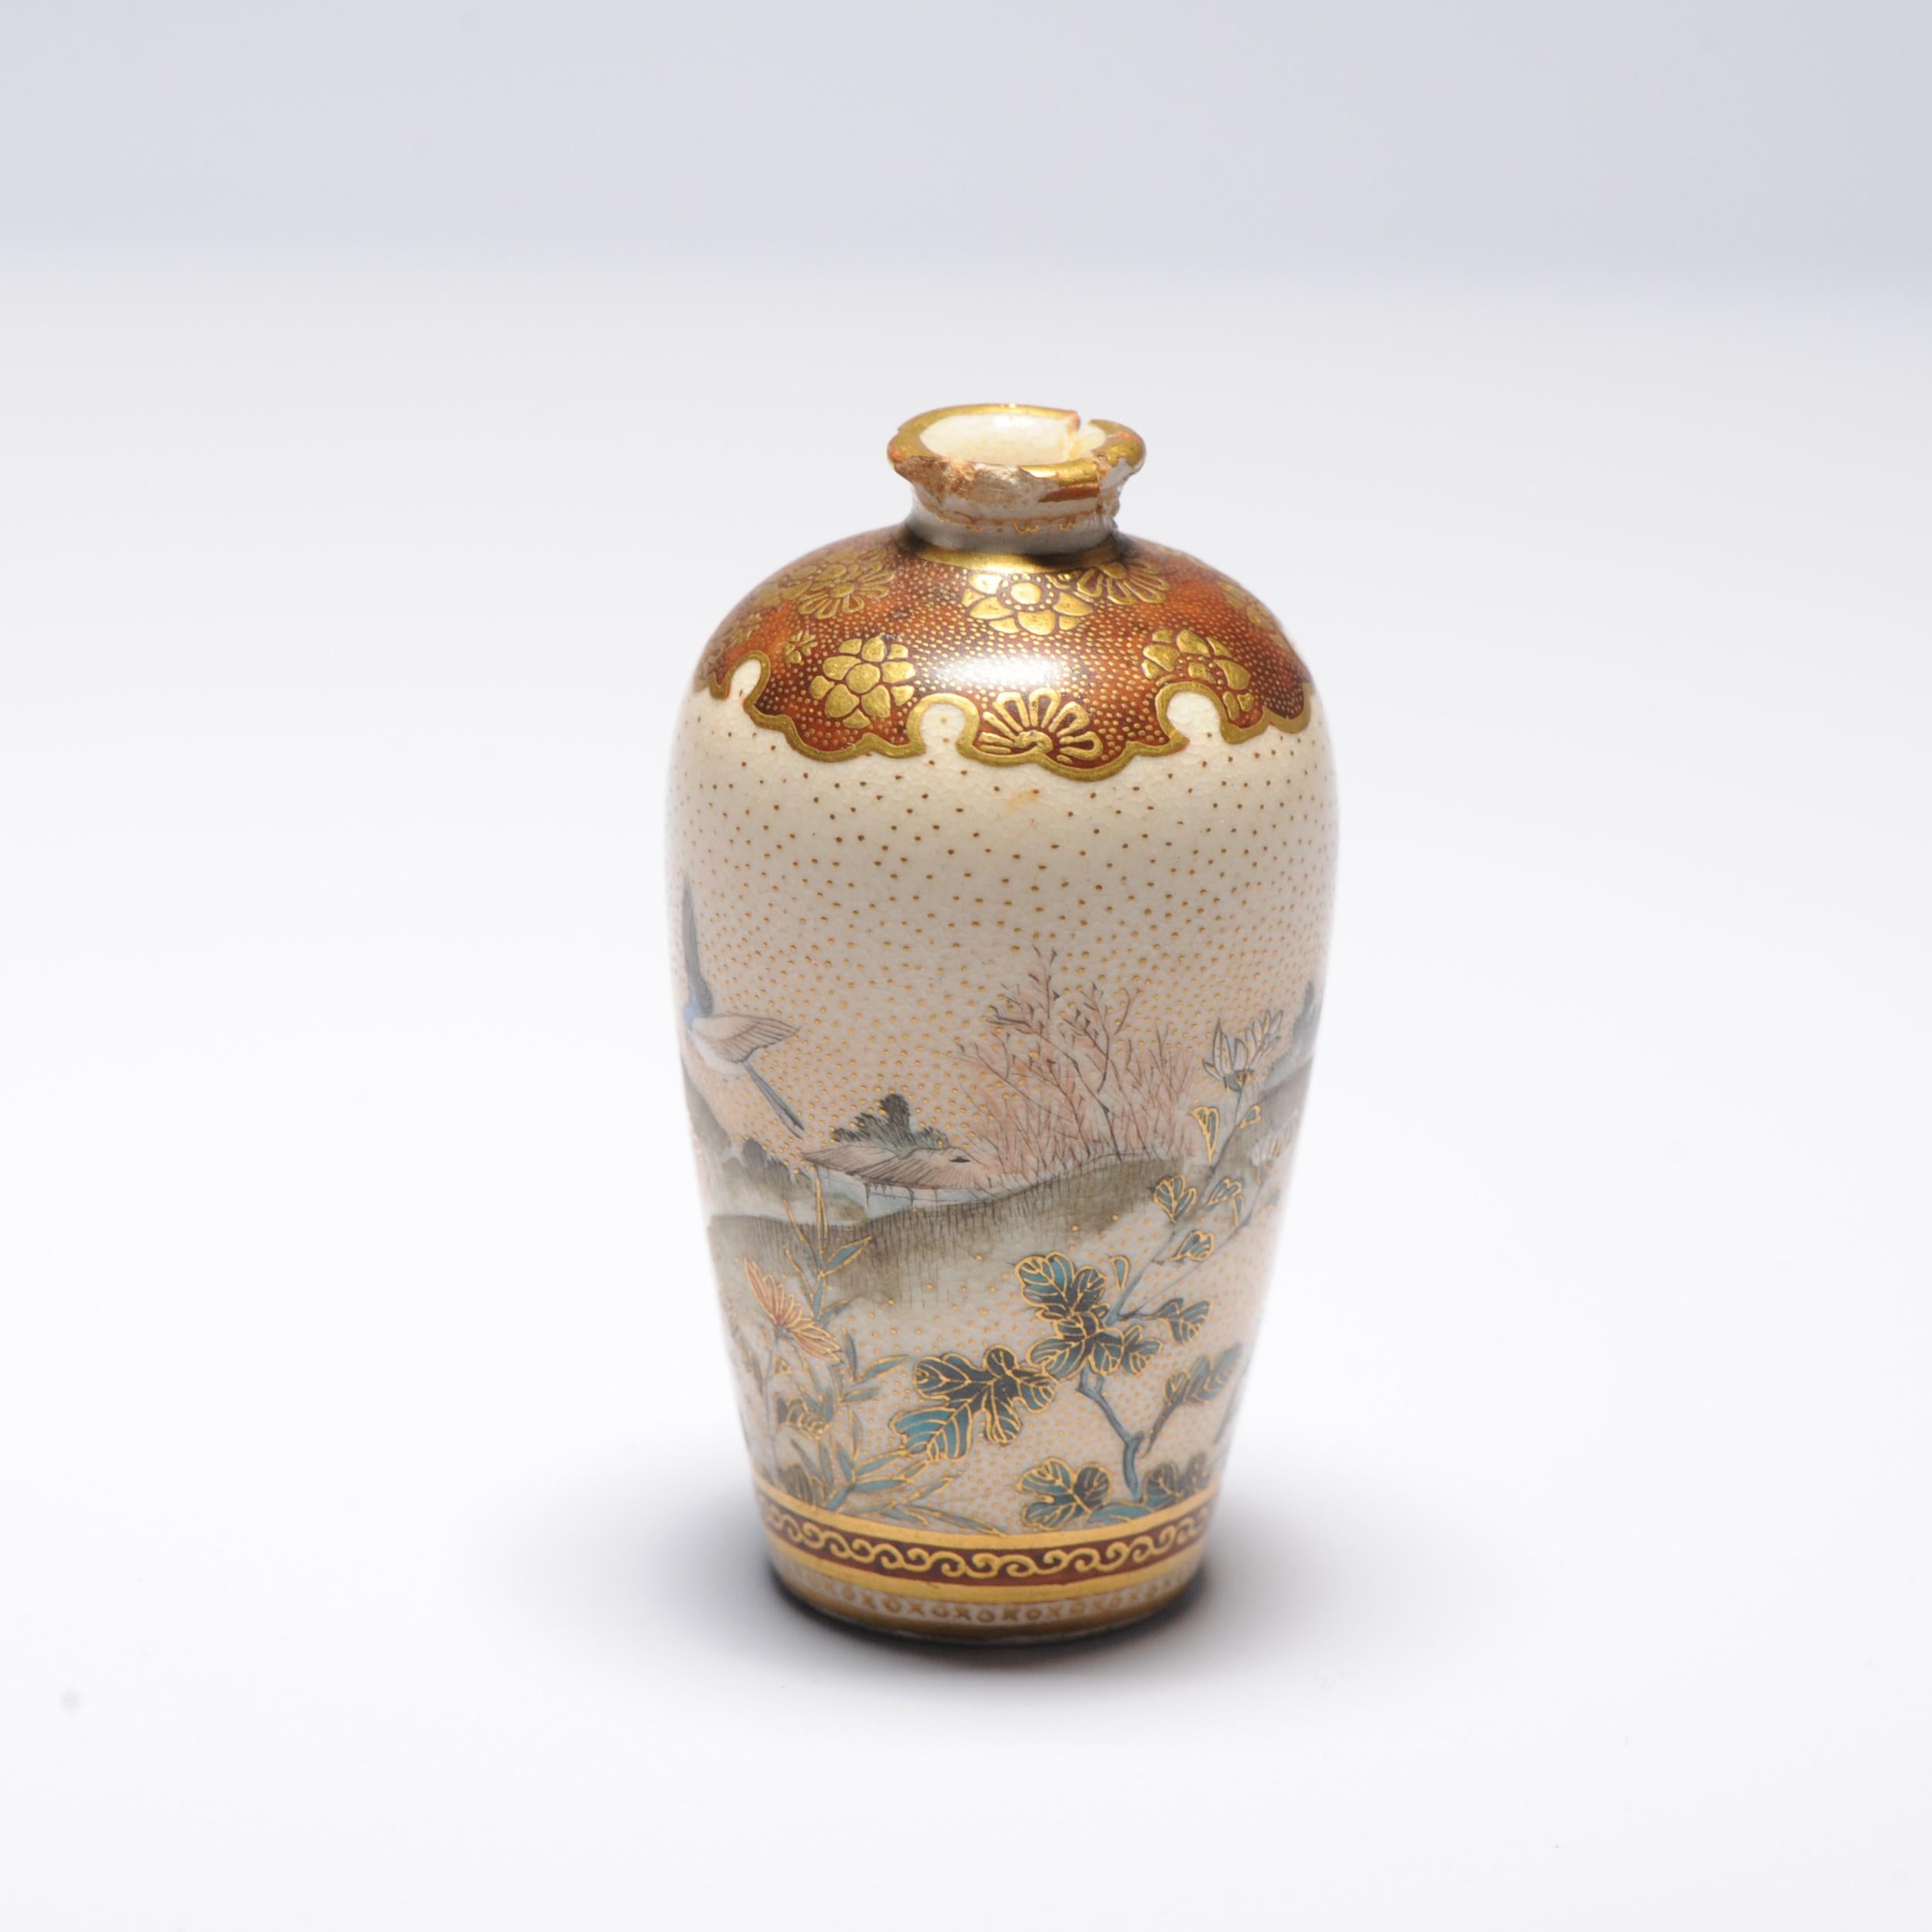 Description

Nous partageons avec vous ce joli vase miniature en satsuma décoré d'oiseaux dans une scène de paysage montagneux.

Condition

Etat général : manque d'ébréchures et ébréchure sur le rebord. Taille 63mm de